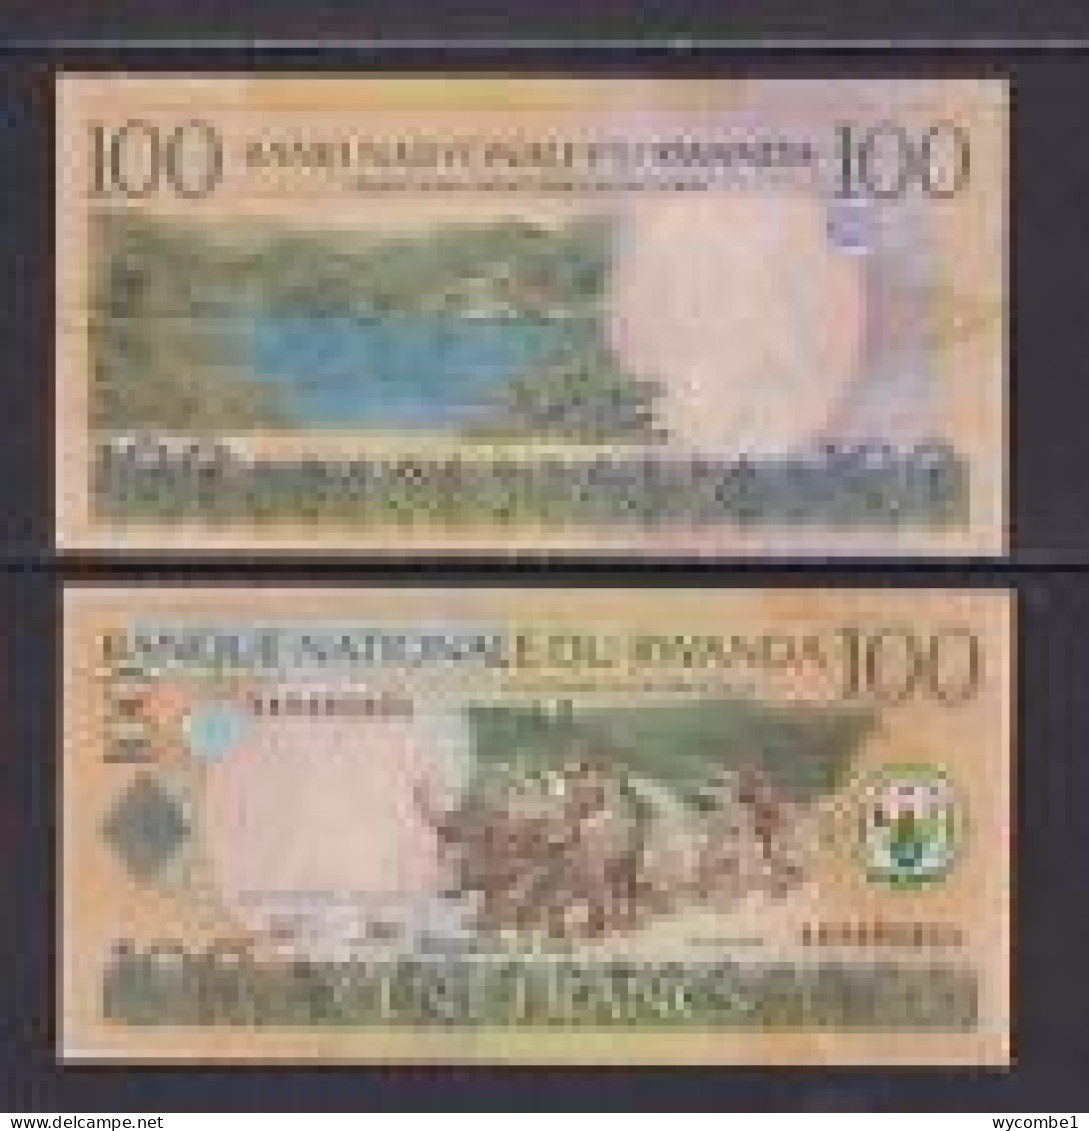 RWANDA - 2003 100 Francs UNC - Ruanda